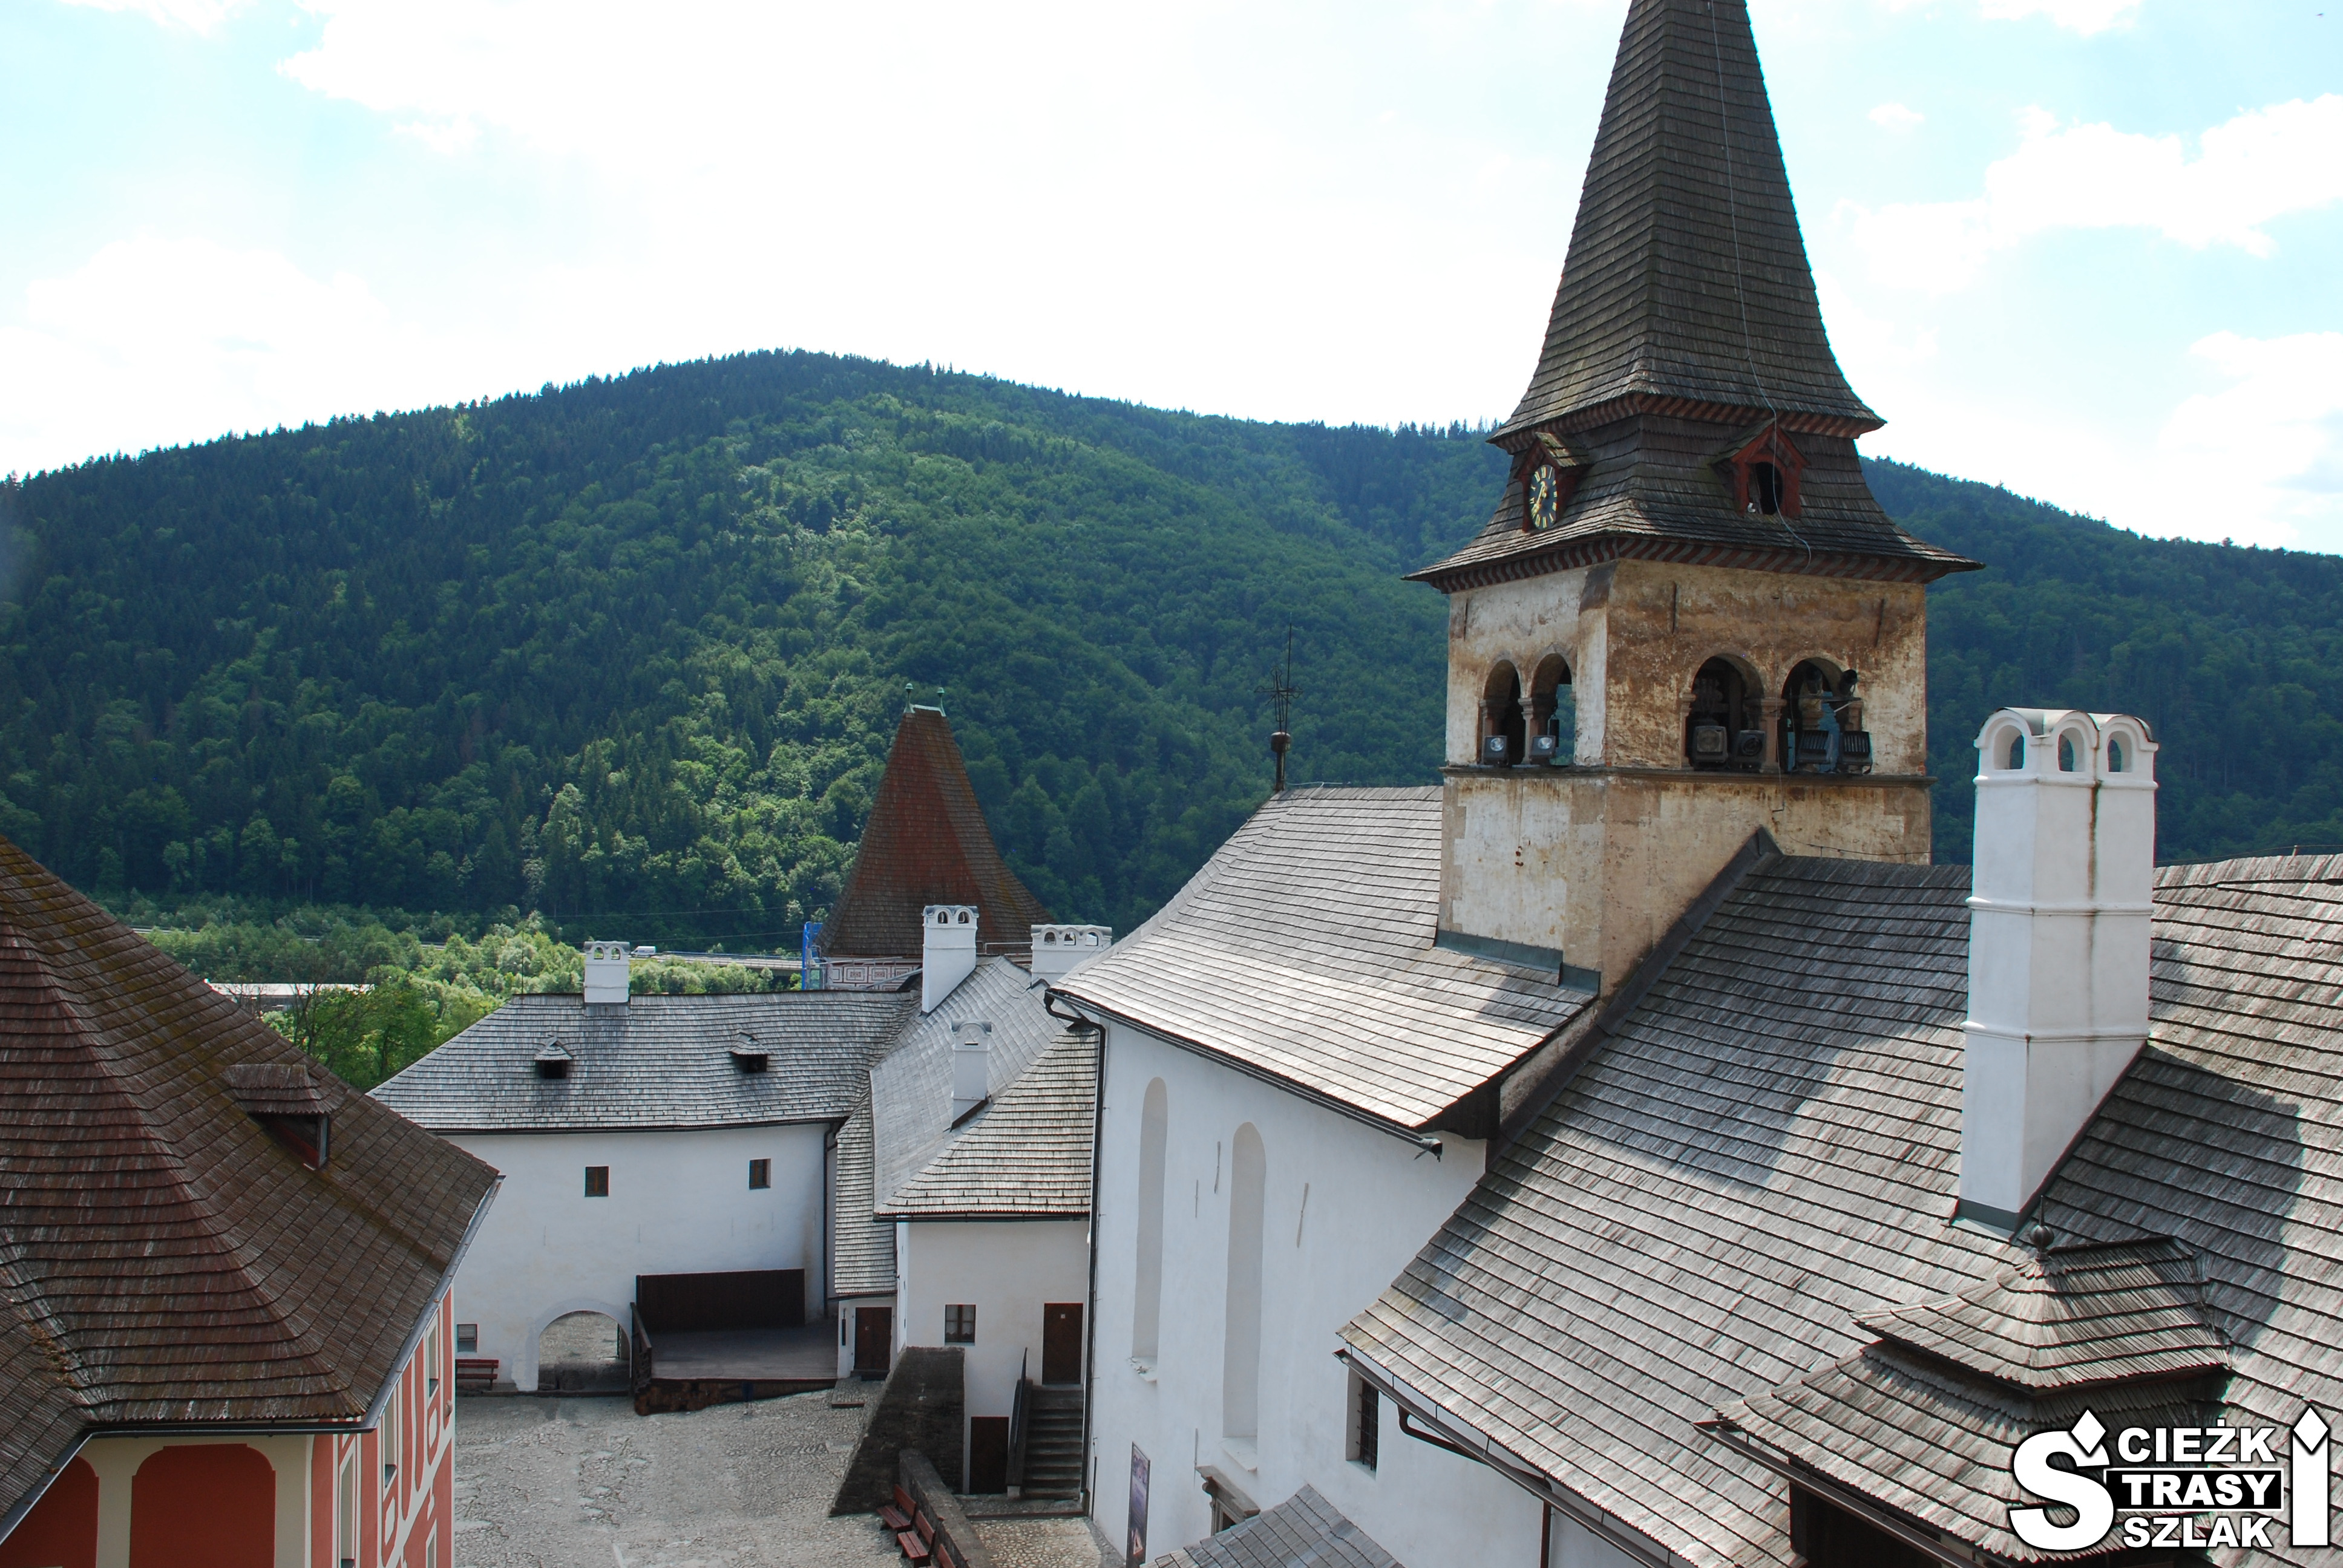 Wieża kościoła na dziedzińcu Zamku Orawskiego na Słowacji na tle wysokich gór w krainie Orawa